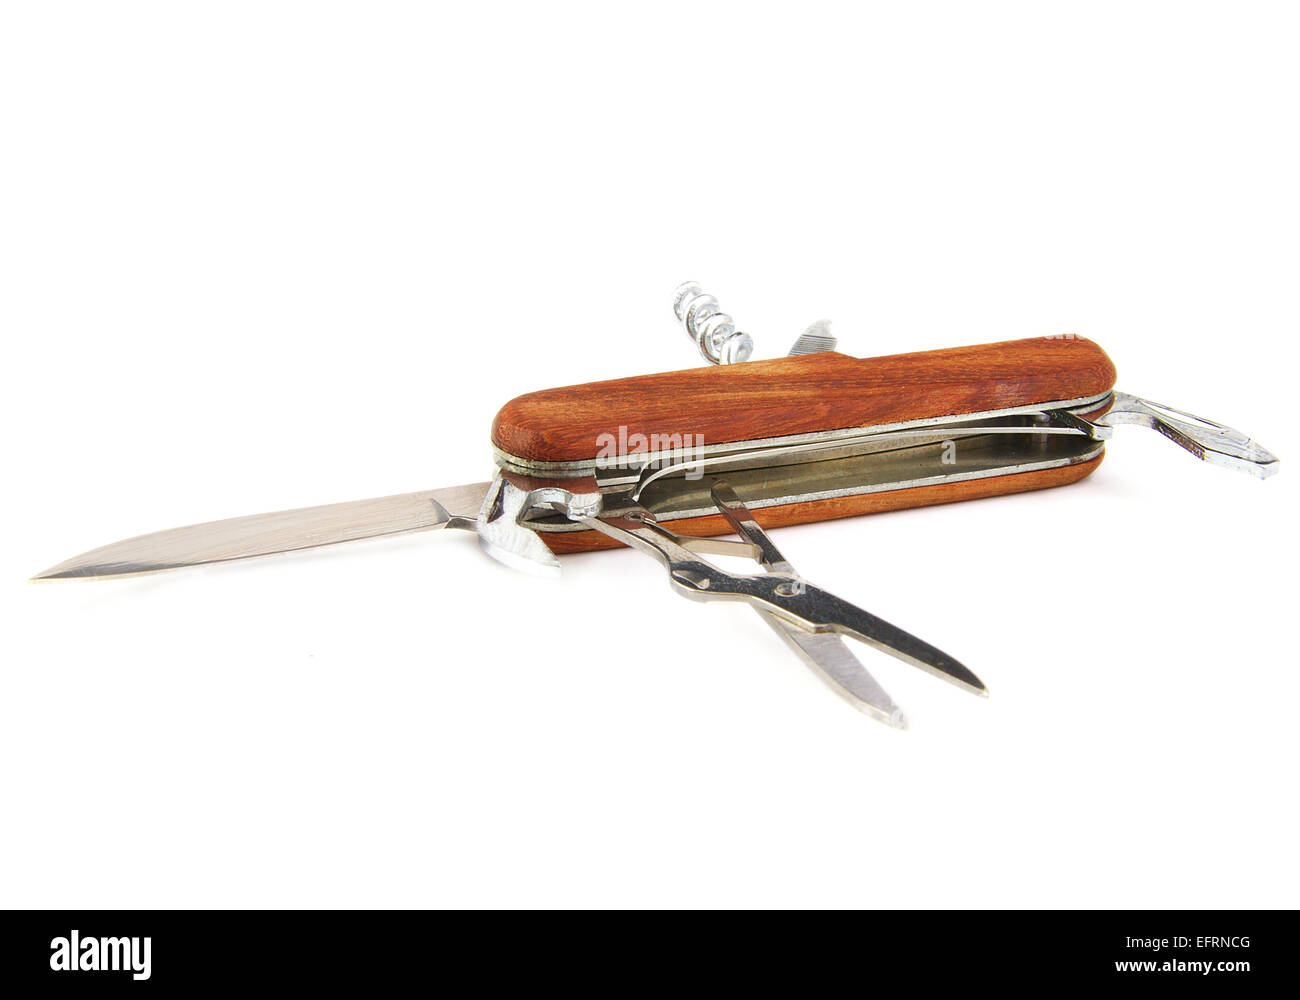 Detailansicht eines geschlossenen braun Schweizer Messers auf weißem Hintergrund Stockfoto